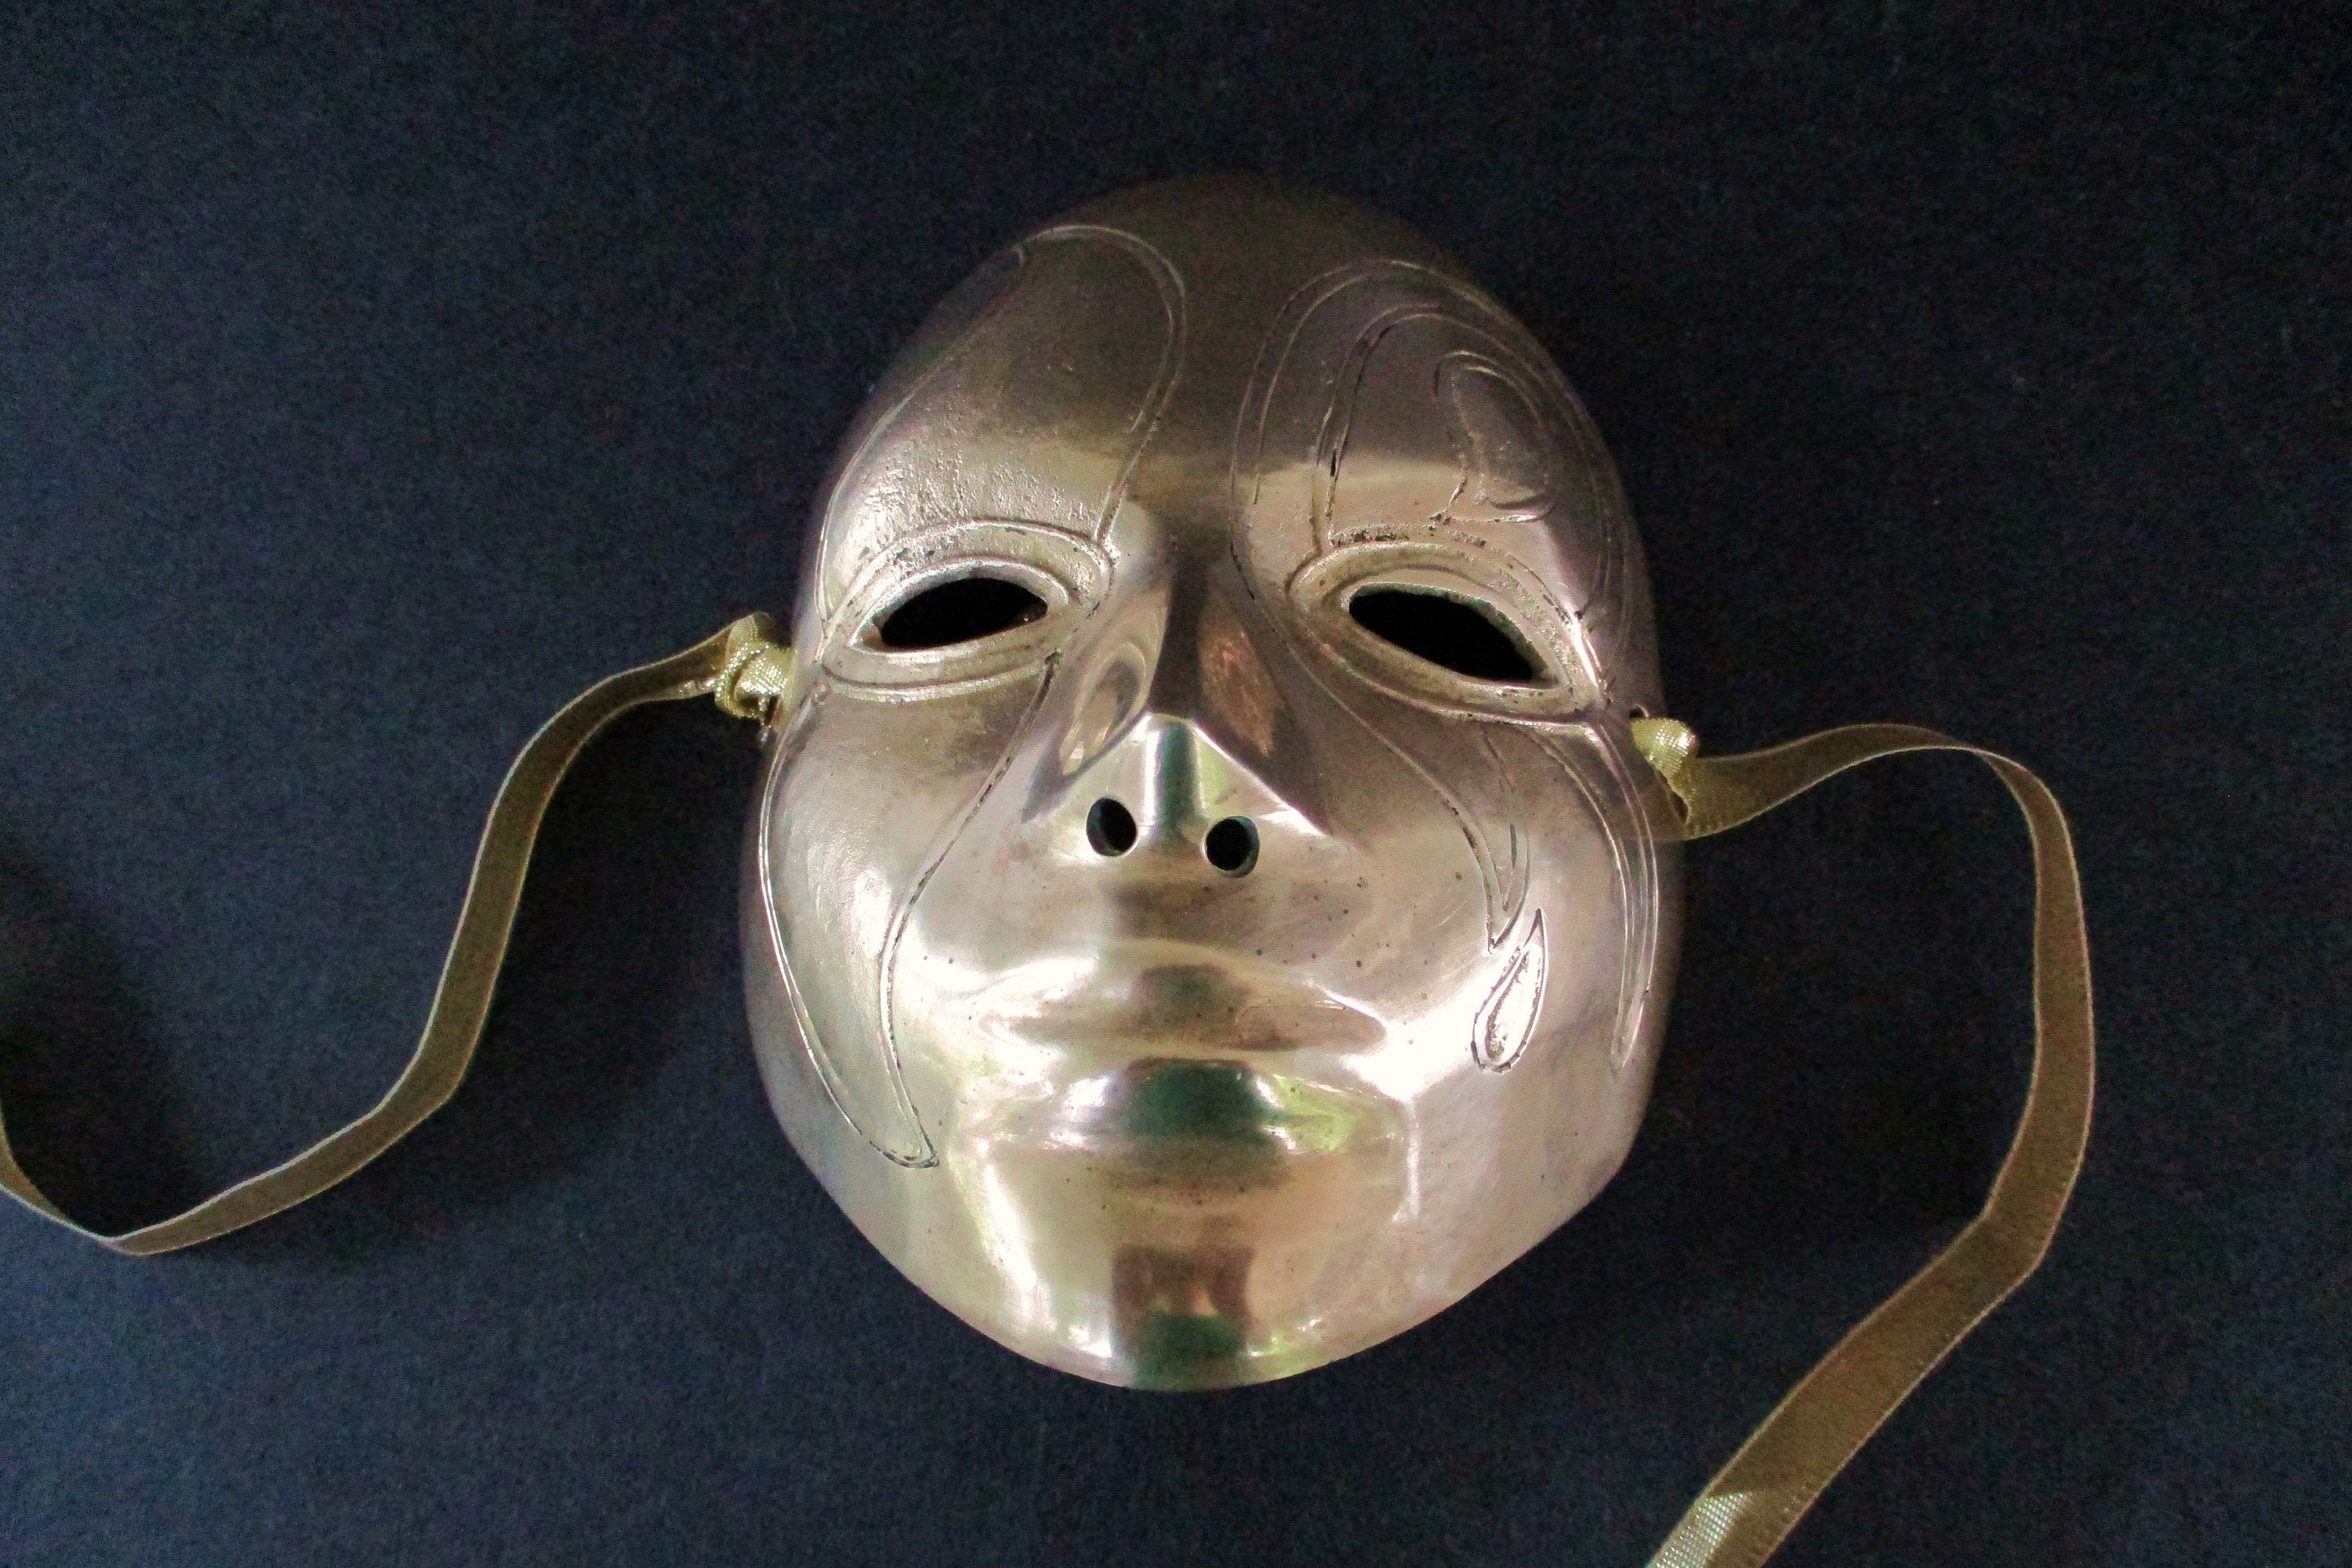 STALKER Mask Face Protection Black Mesh Mask Half Face Mesh Mask Adjustable  Mask in Black Black Military Mask Tactics Games 